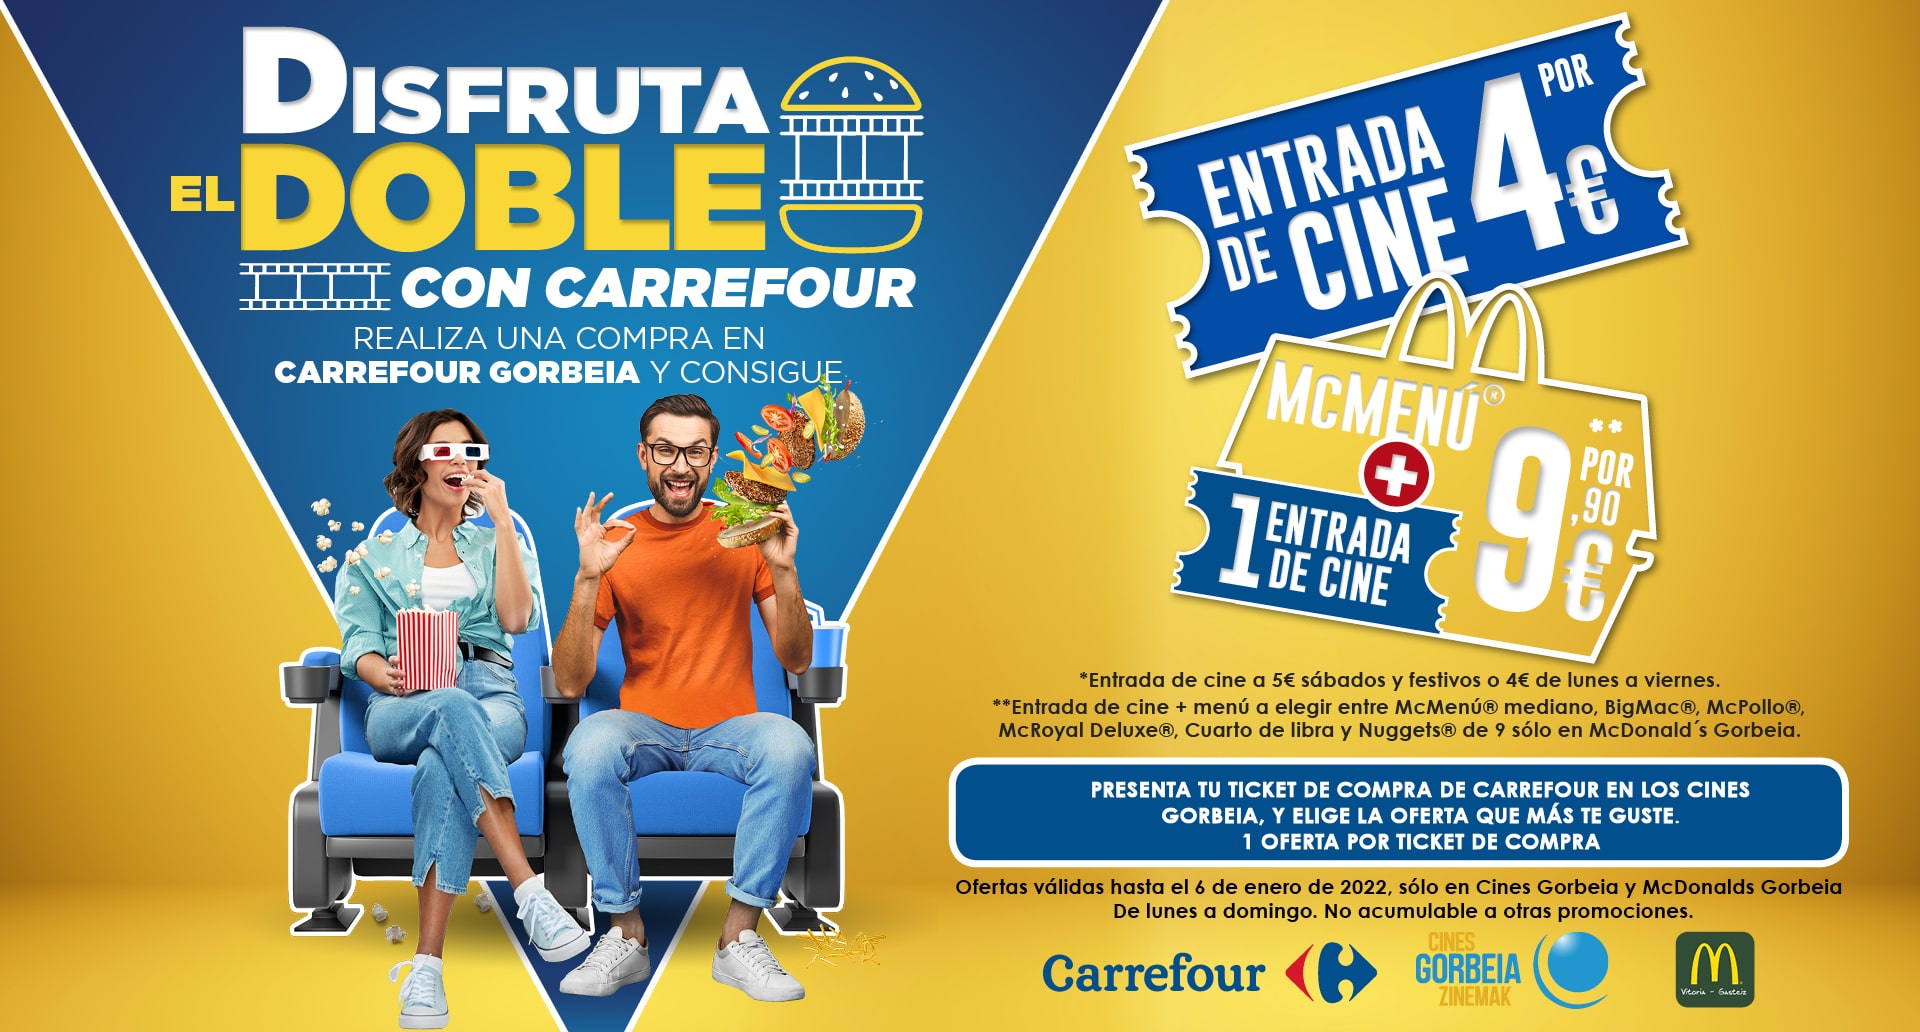 ¡Disfruta el doble con Carrefour en el Parque Comercial Gorbeia! 